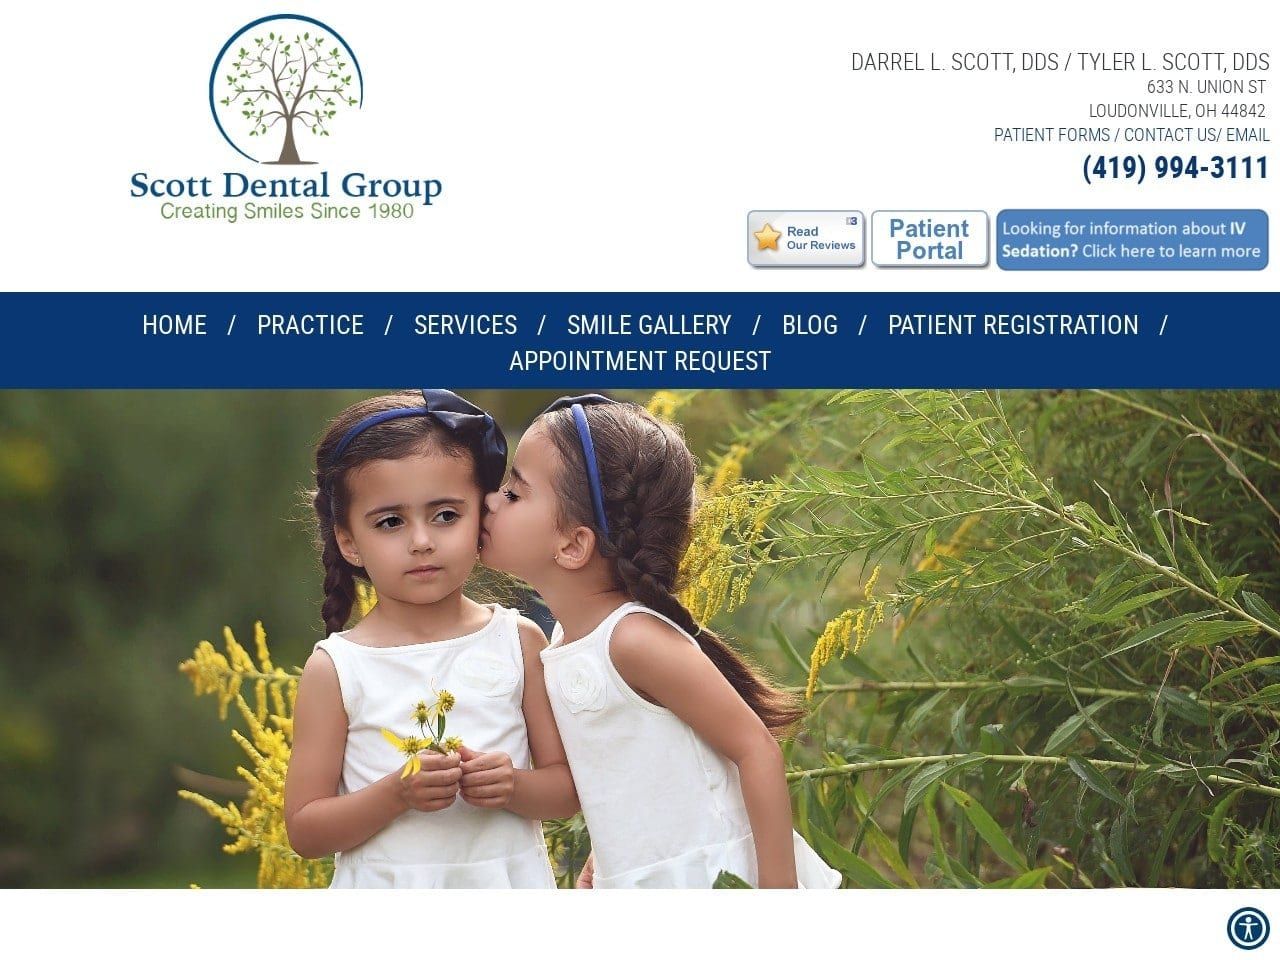 Scott Dental Group Website Screenshot from scottdentalgroup.com